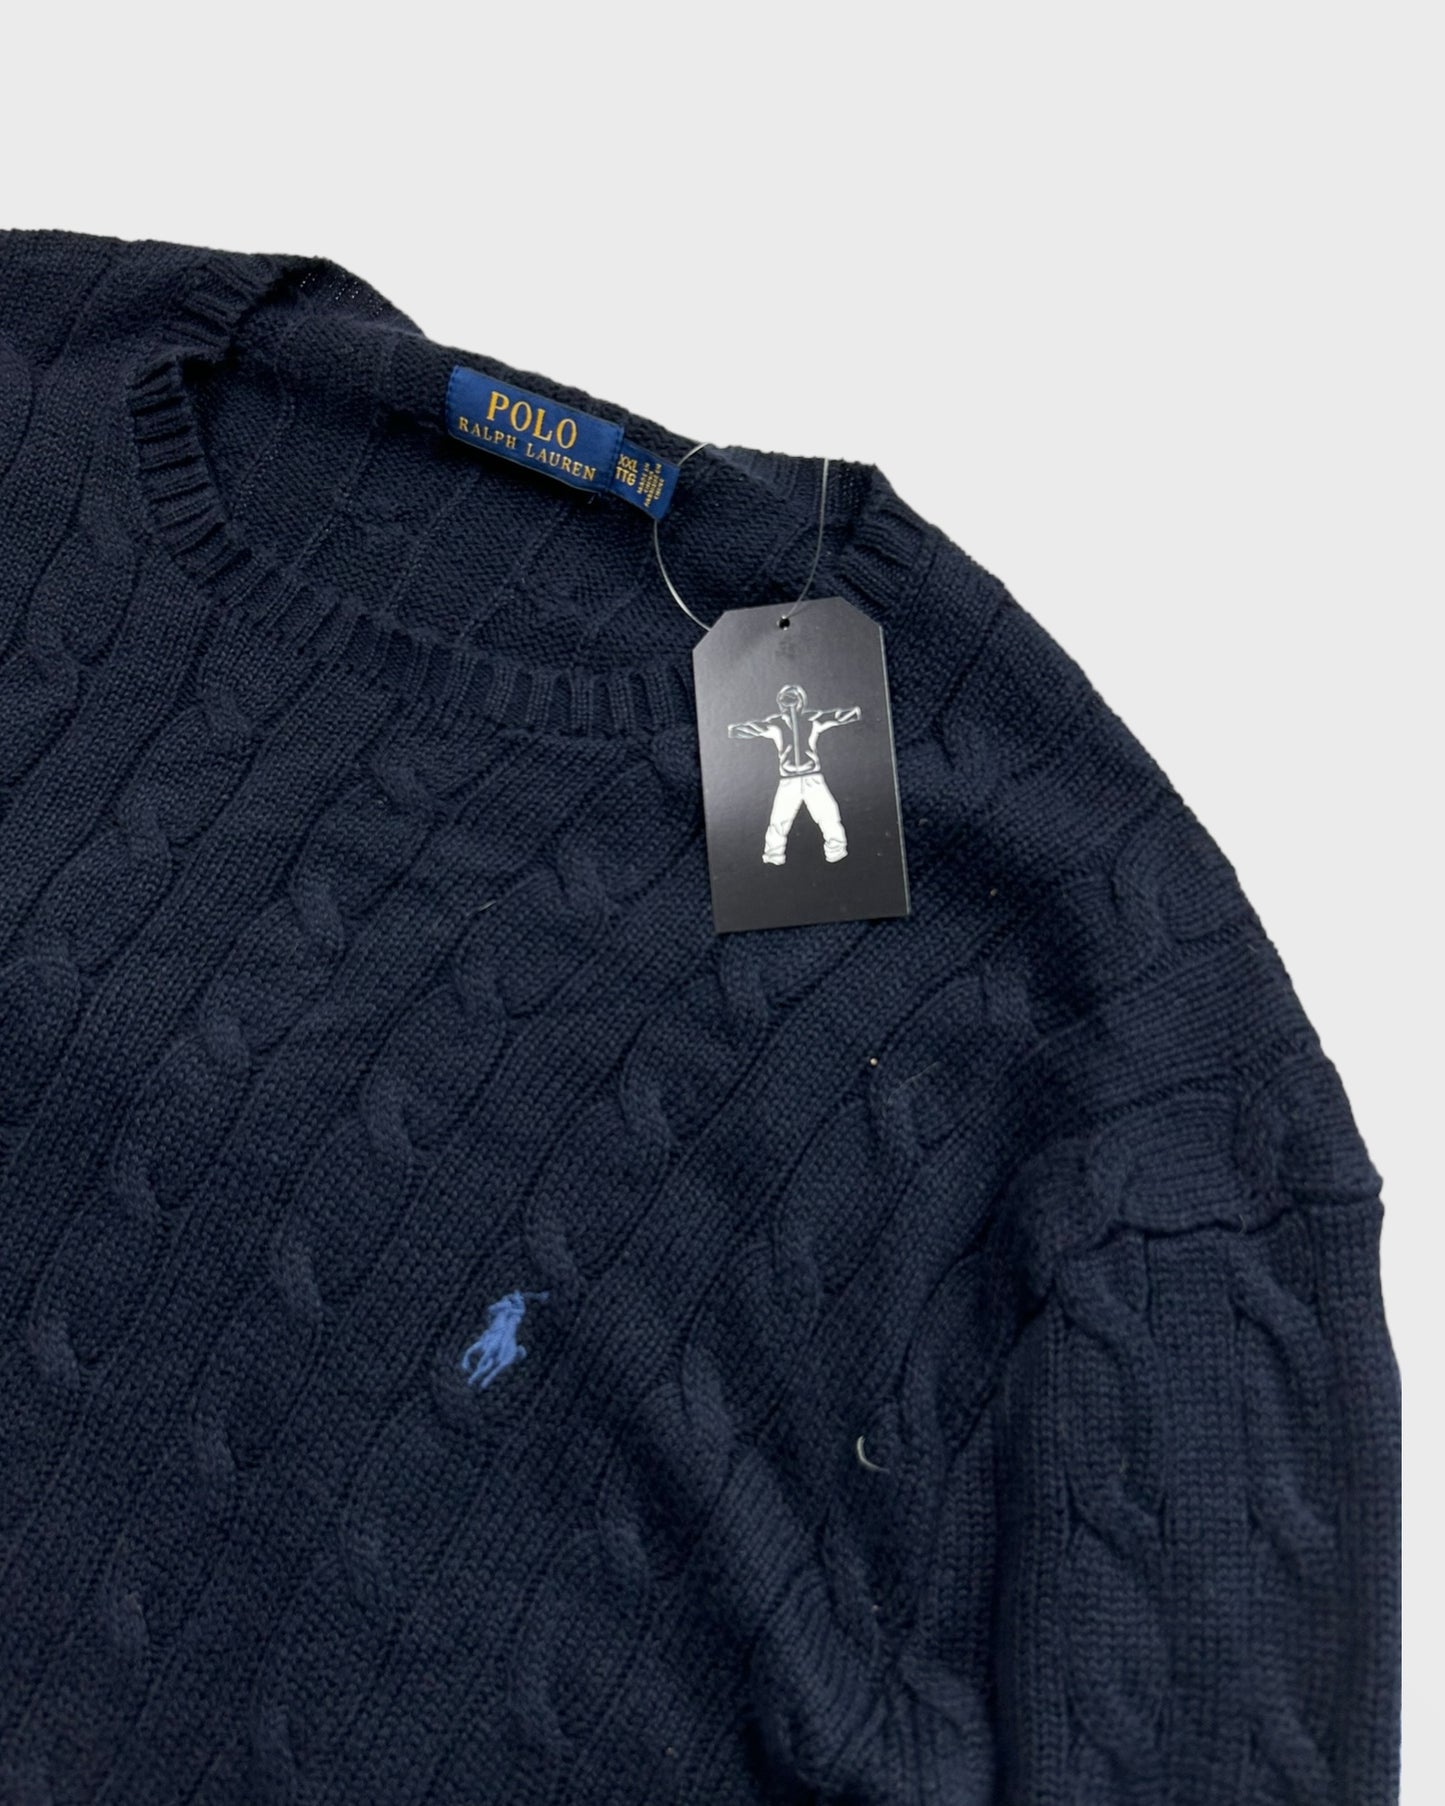 Ralph Lauren torsadé / knit (XL)